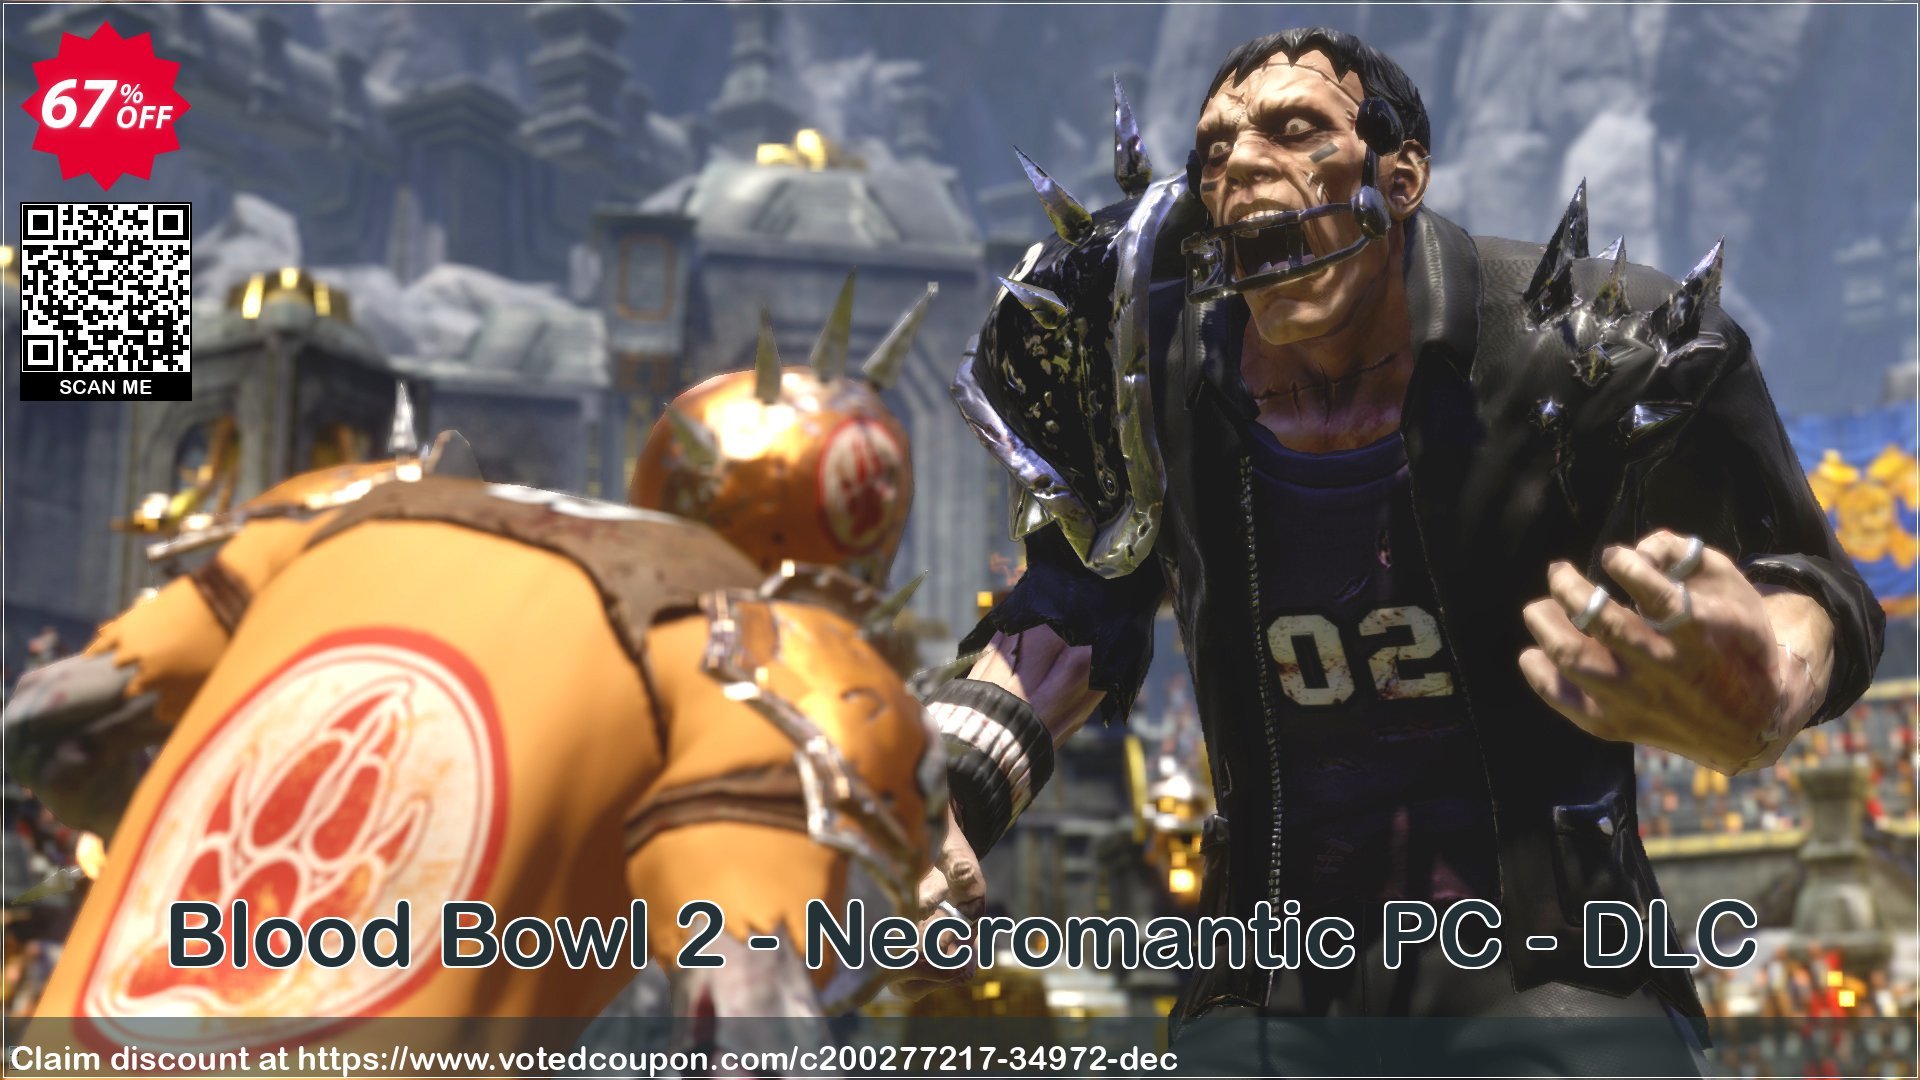 Blood Bowl 2 - Necromantic PC - DLC Coupon Code Apr 2024, 67% OFF - VotedCoupon